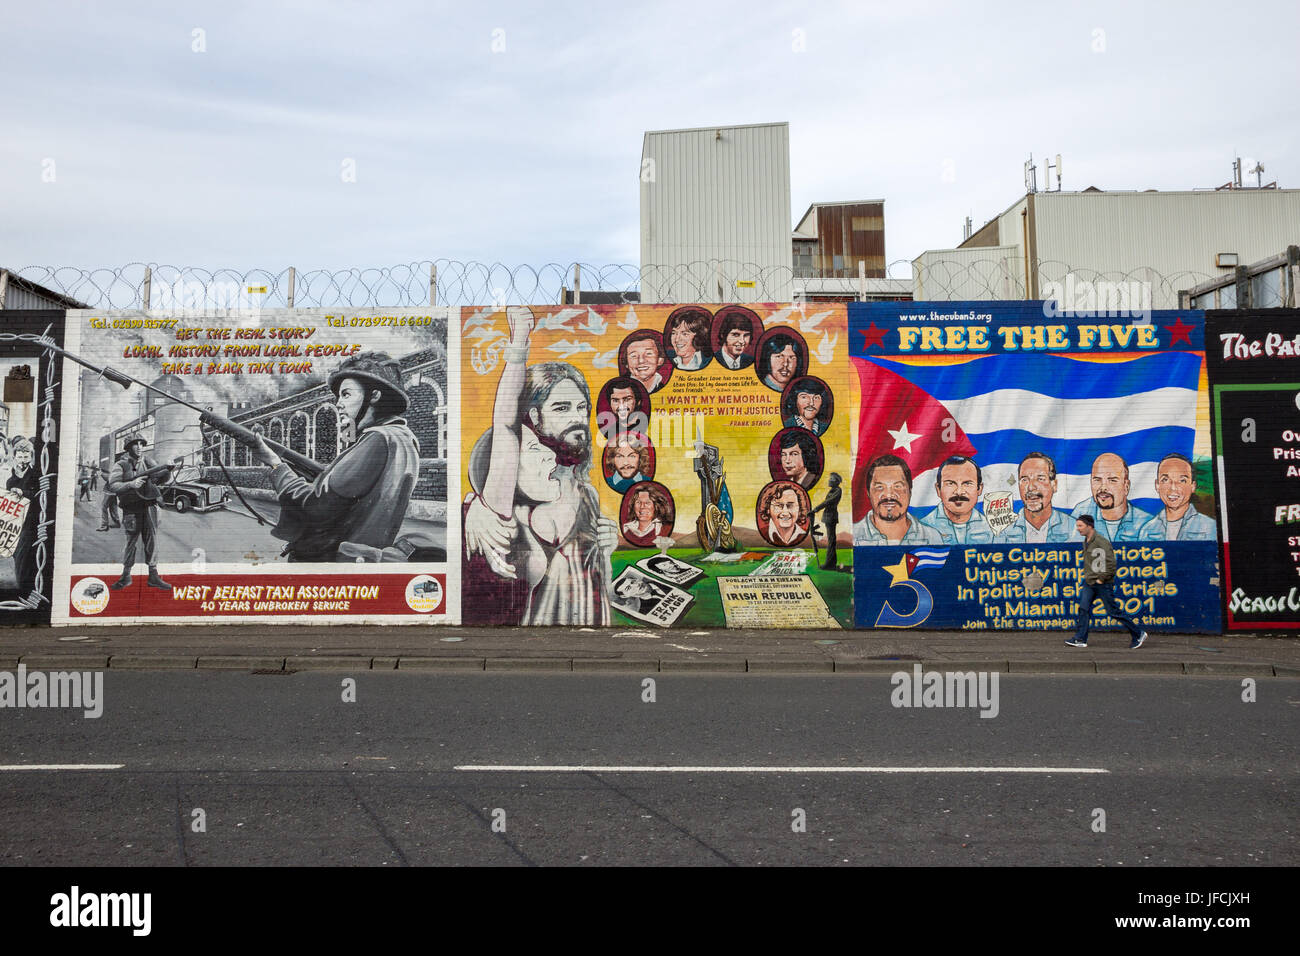 BELFAST, EN IRLANDE DU NORD - Feb 9, 2014 : fresque politique à Belfast, en Irlande du Nord. Falls Road est célèbre pour ses peintures murales politiques. Banque D'Images